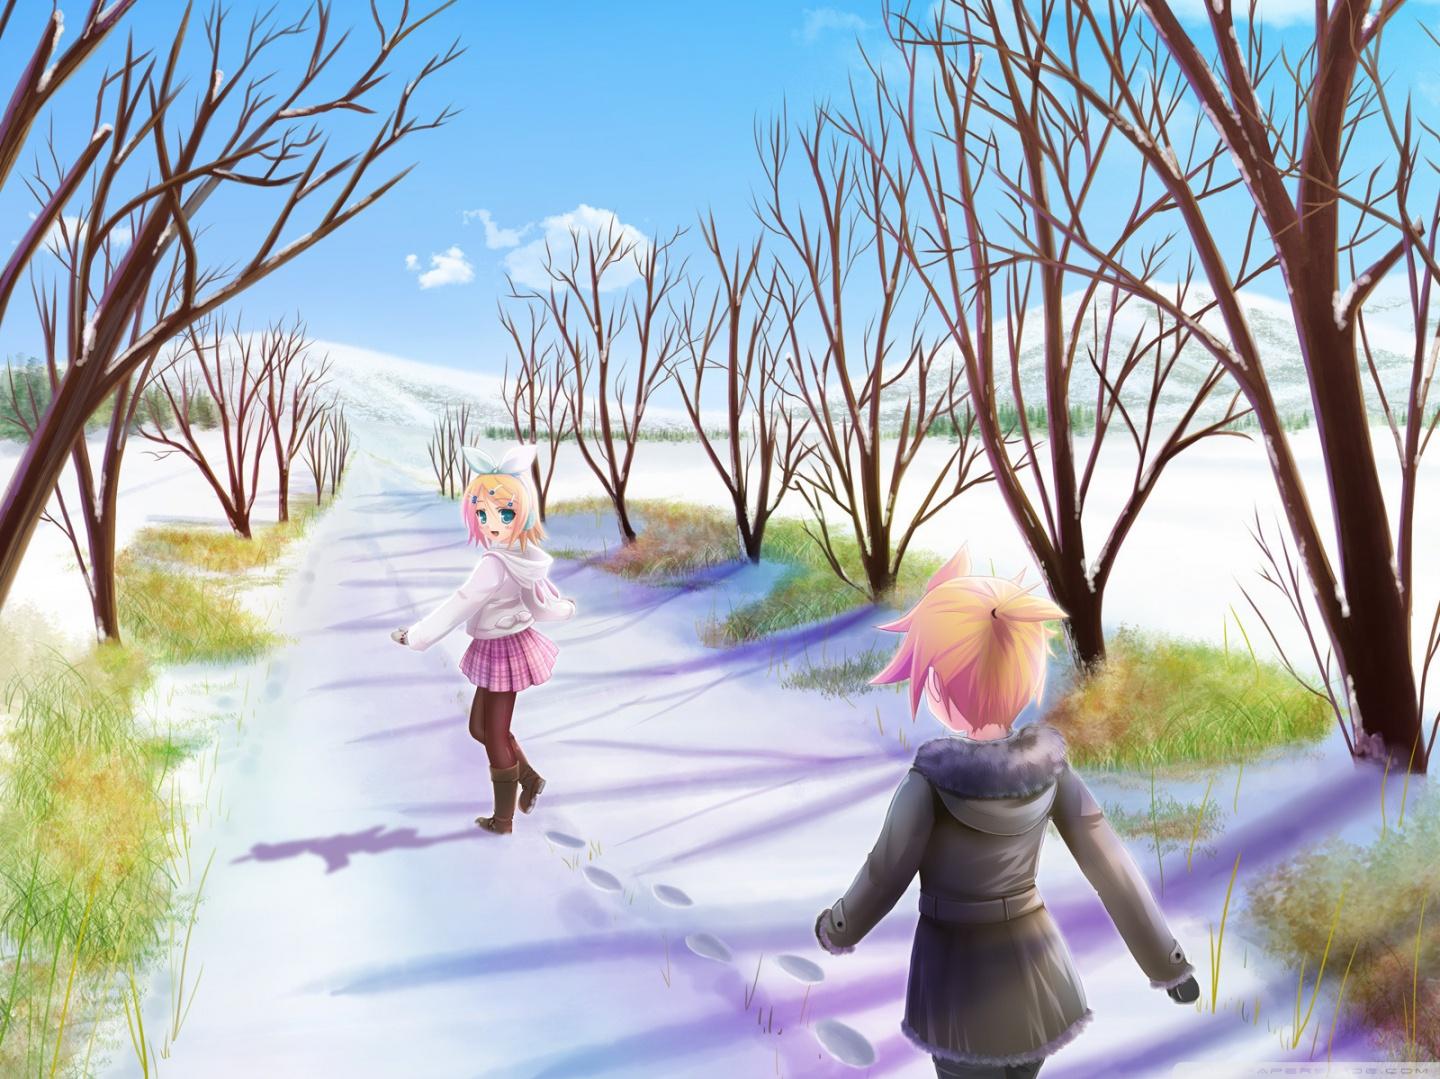 Anime Winter Scene Ultra HD Desktop Background Wallpaper For 4k